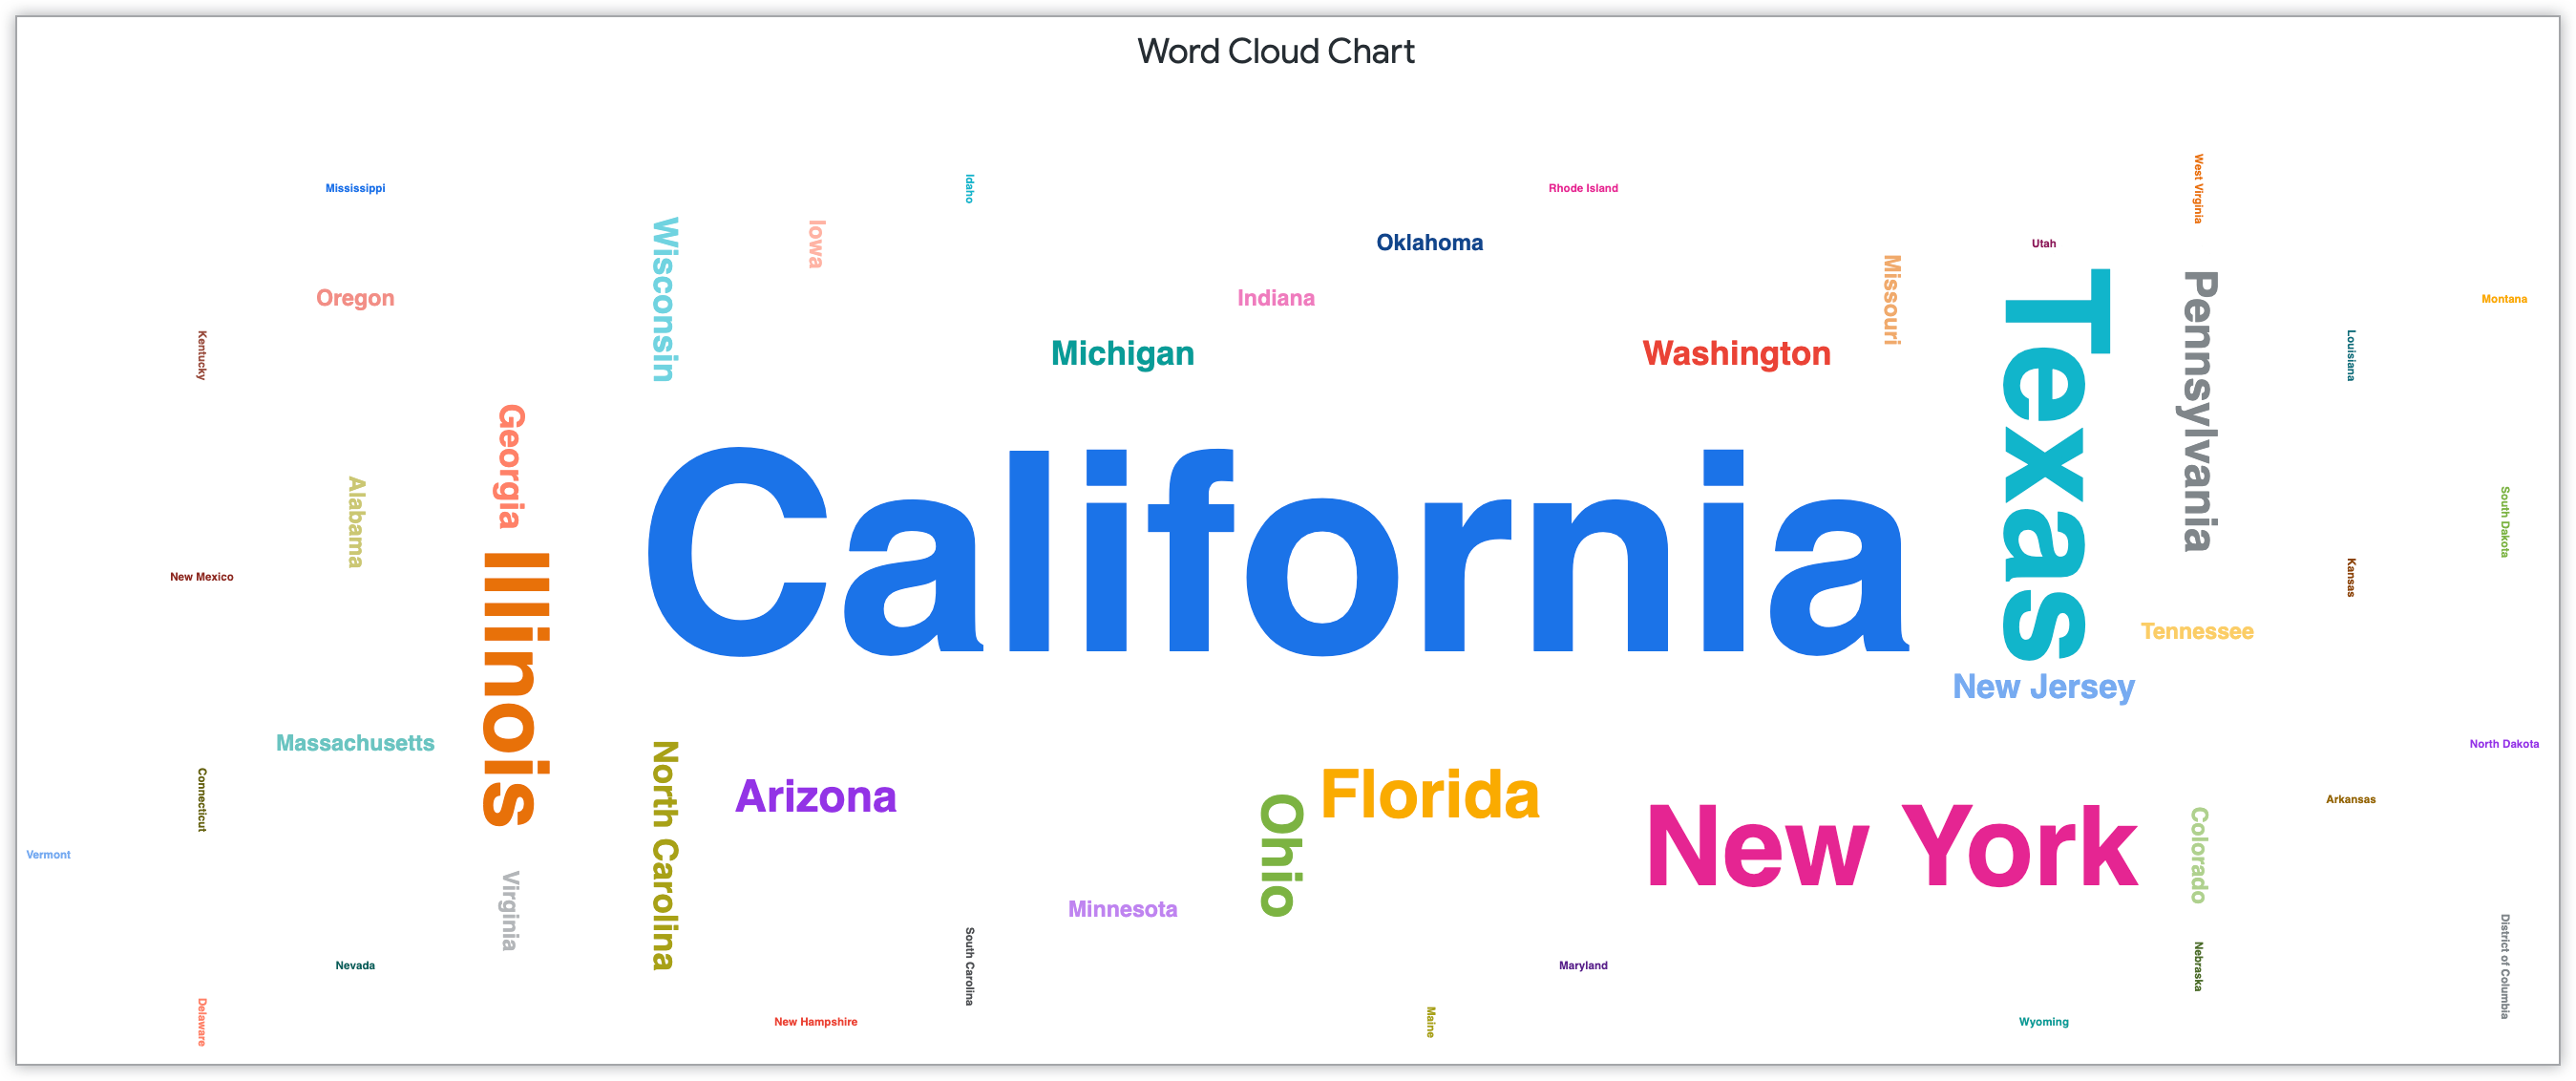 Gráfico de nube de palabras que muestra los nombres de los estados dimensionados según la cantidad de clientes en ese estado.